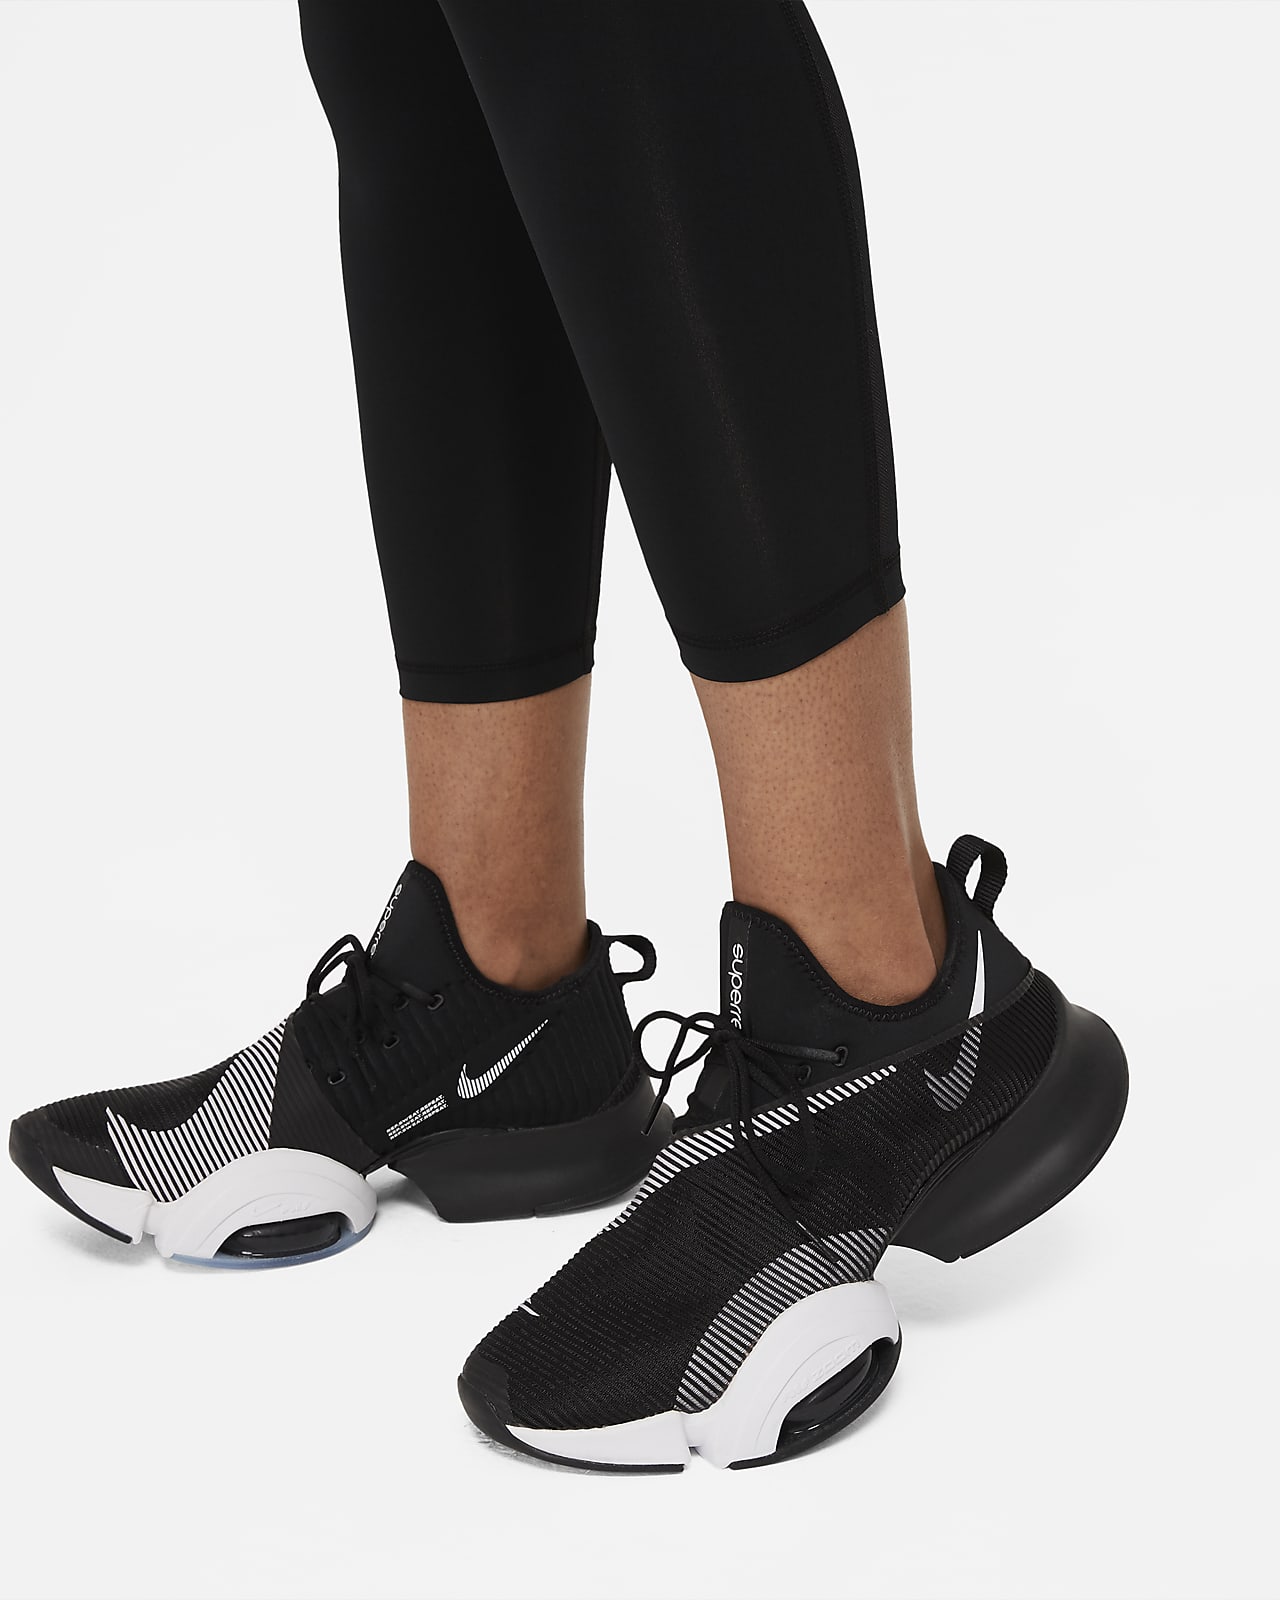 Nike One Women's Mid-Rise 7/8 Mesh-Panelled Leggings. Nike NL